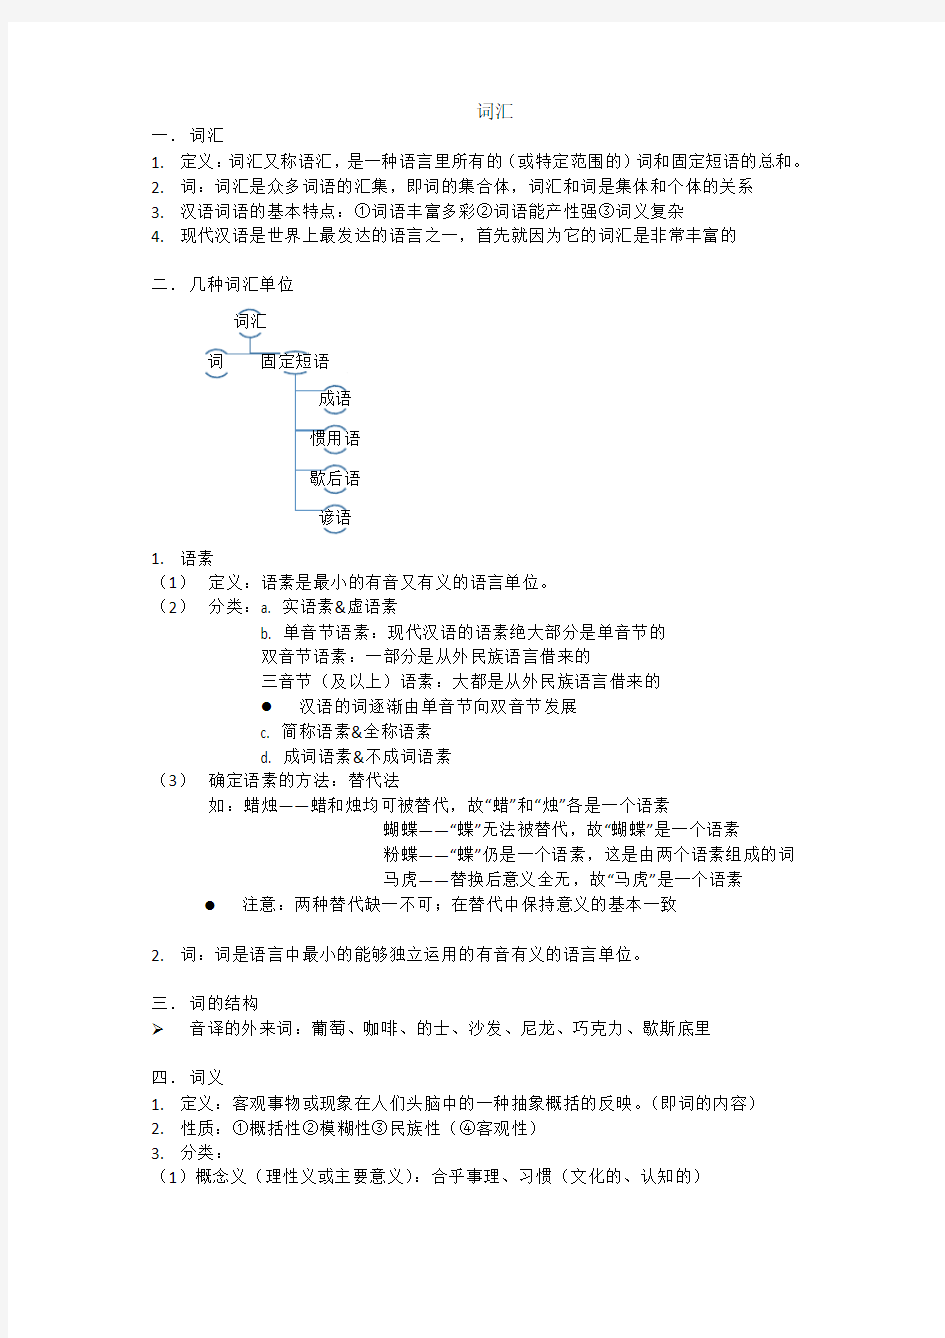 【大学语文】现代汉语词汇部分整理